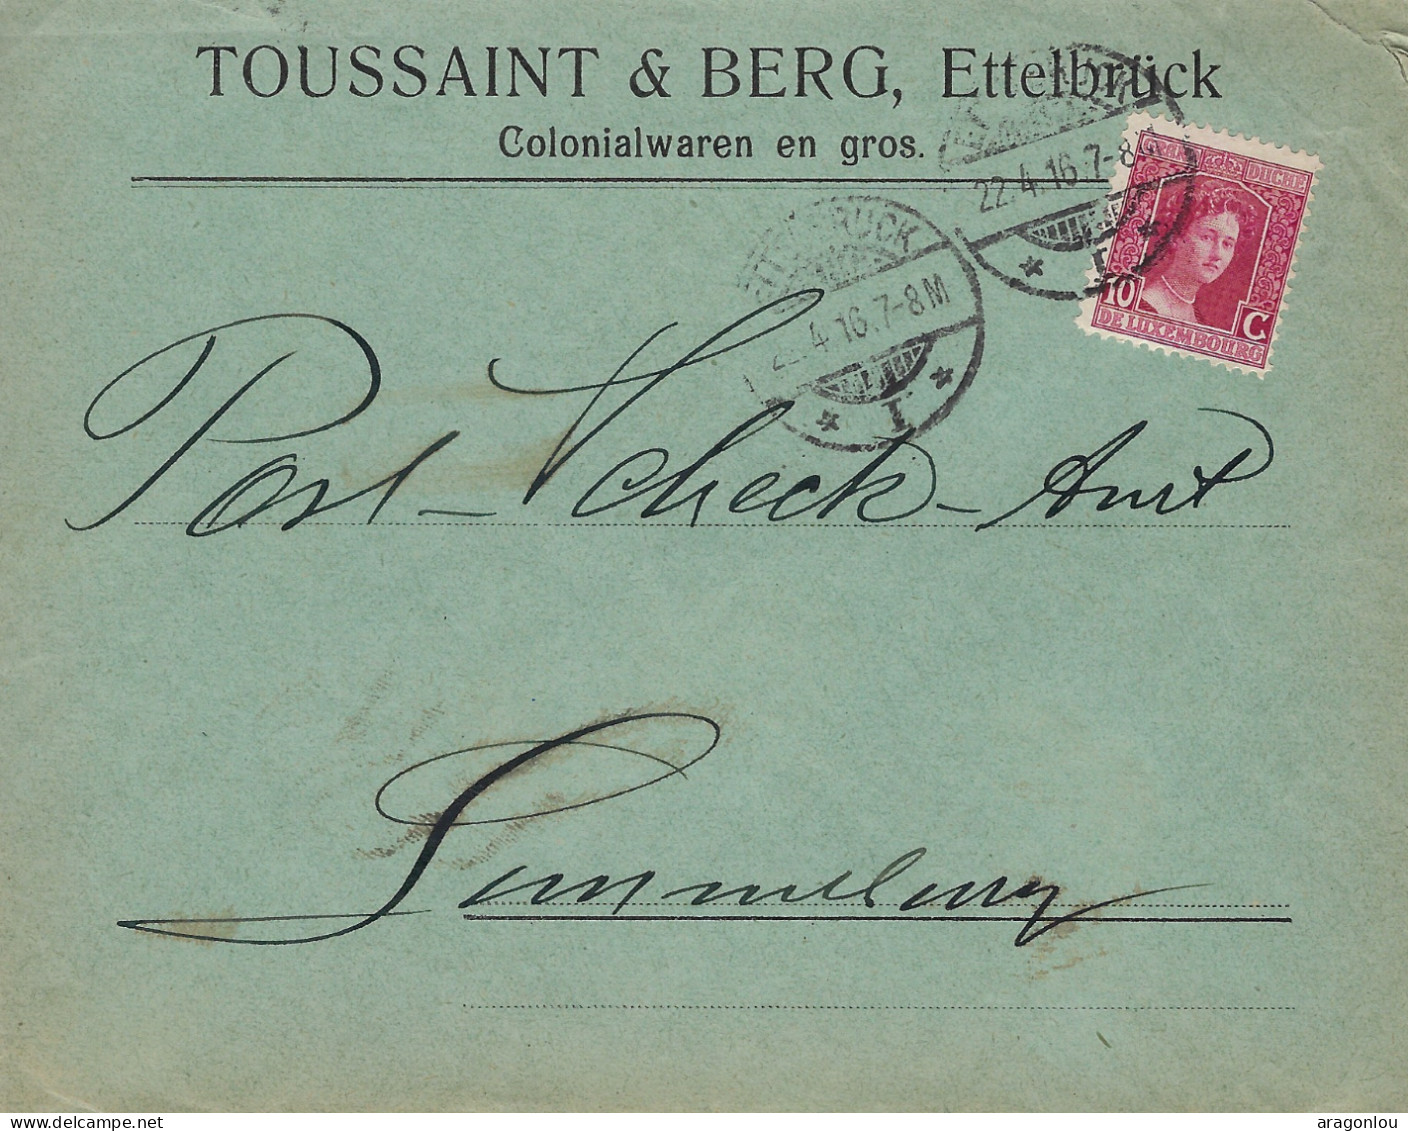 Luxembourg - Luxemburg - Lettre  1916  An Das Post -Scheck-Amt , Luxembourg- Cachet Luxembourg - Cartas & Documentos